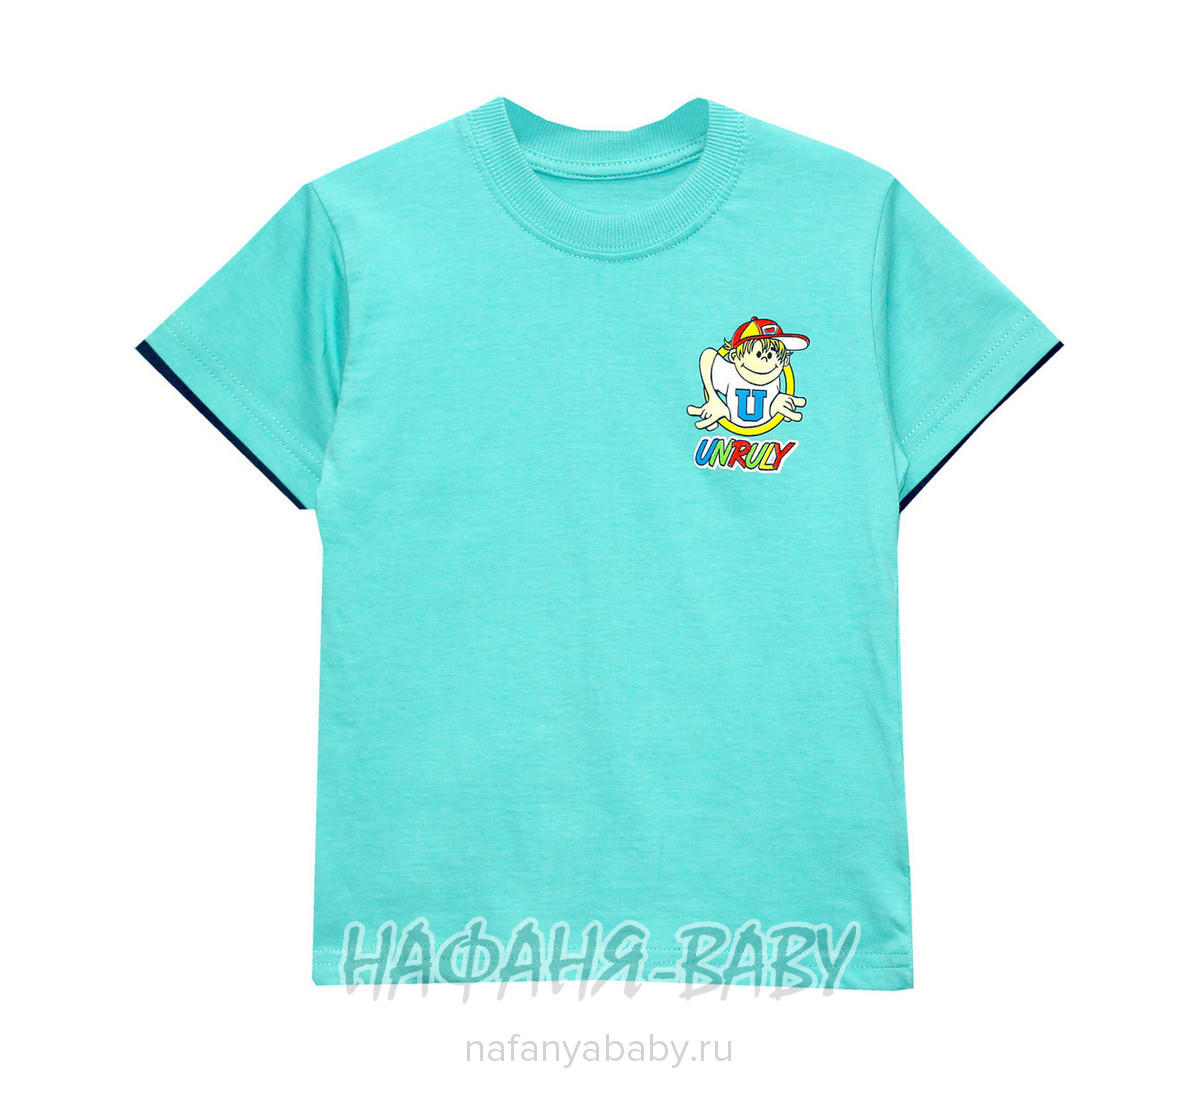 Детская футболка UNRULY арт: 2974, 1-4 года, 5-9 лет, оптом Турция